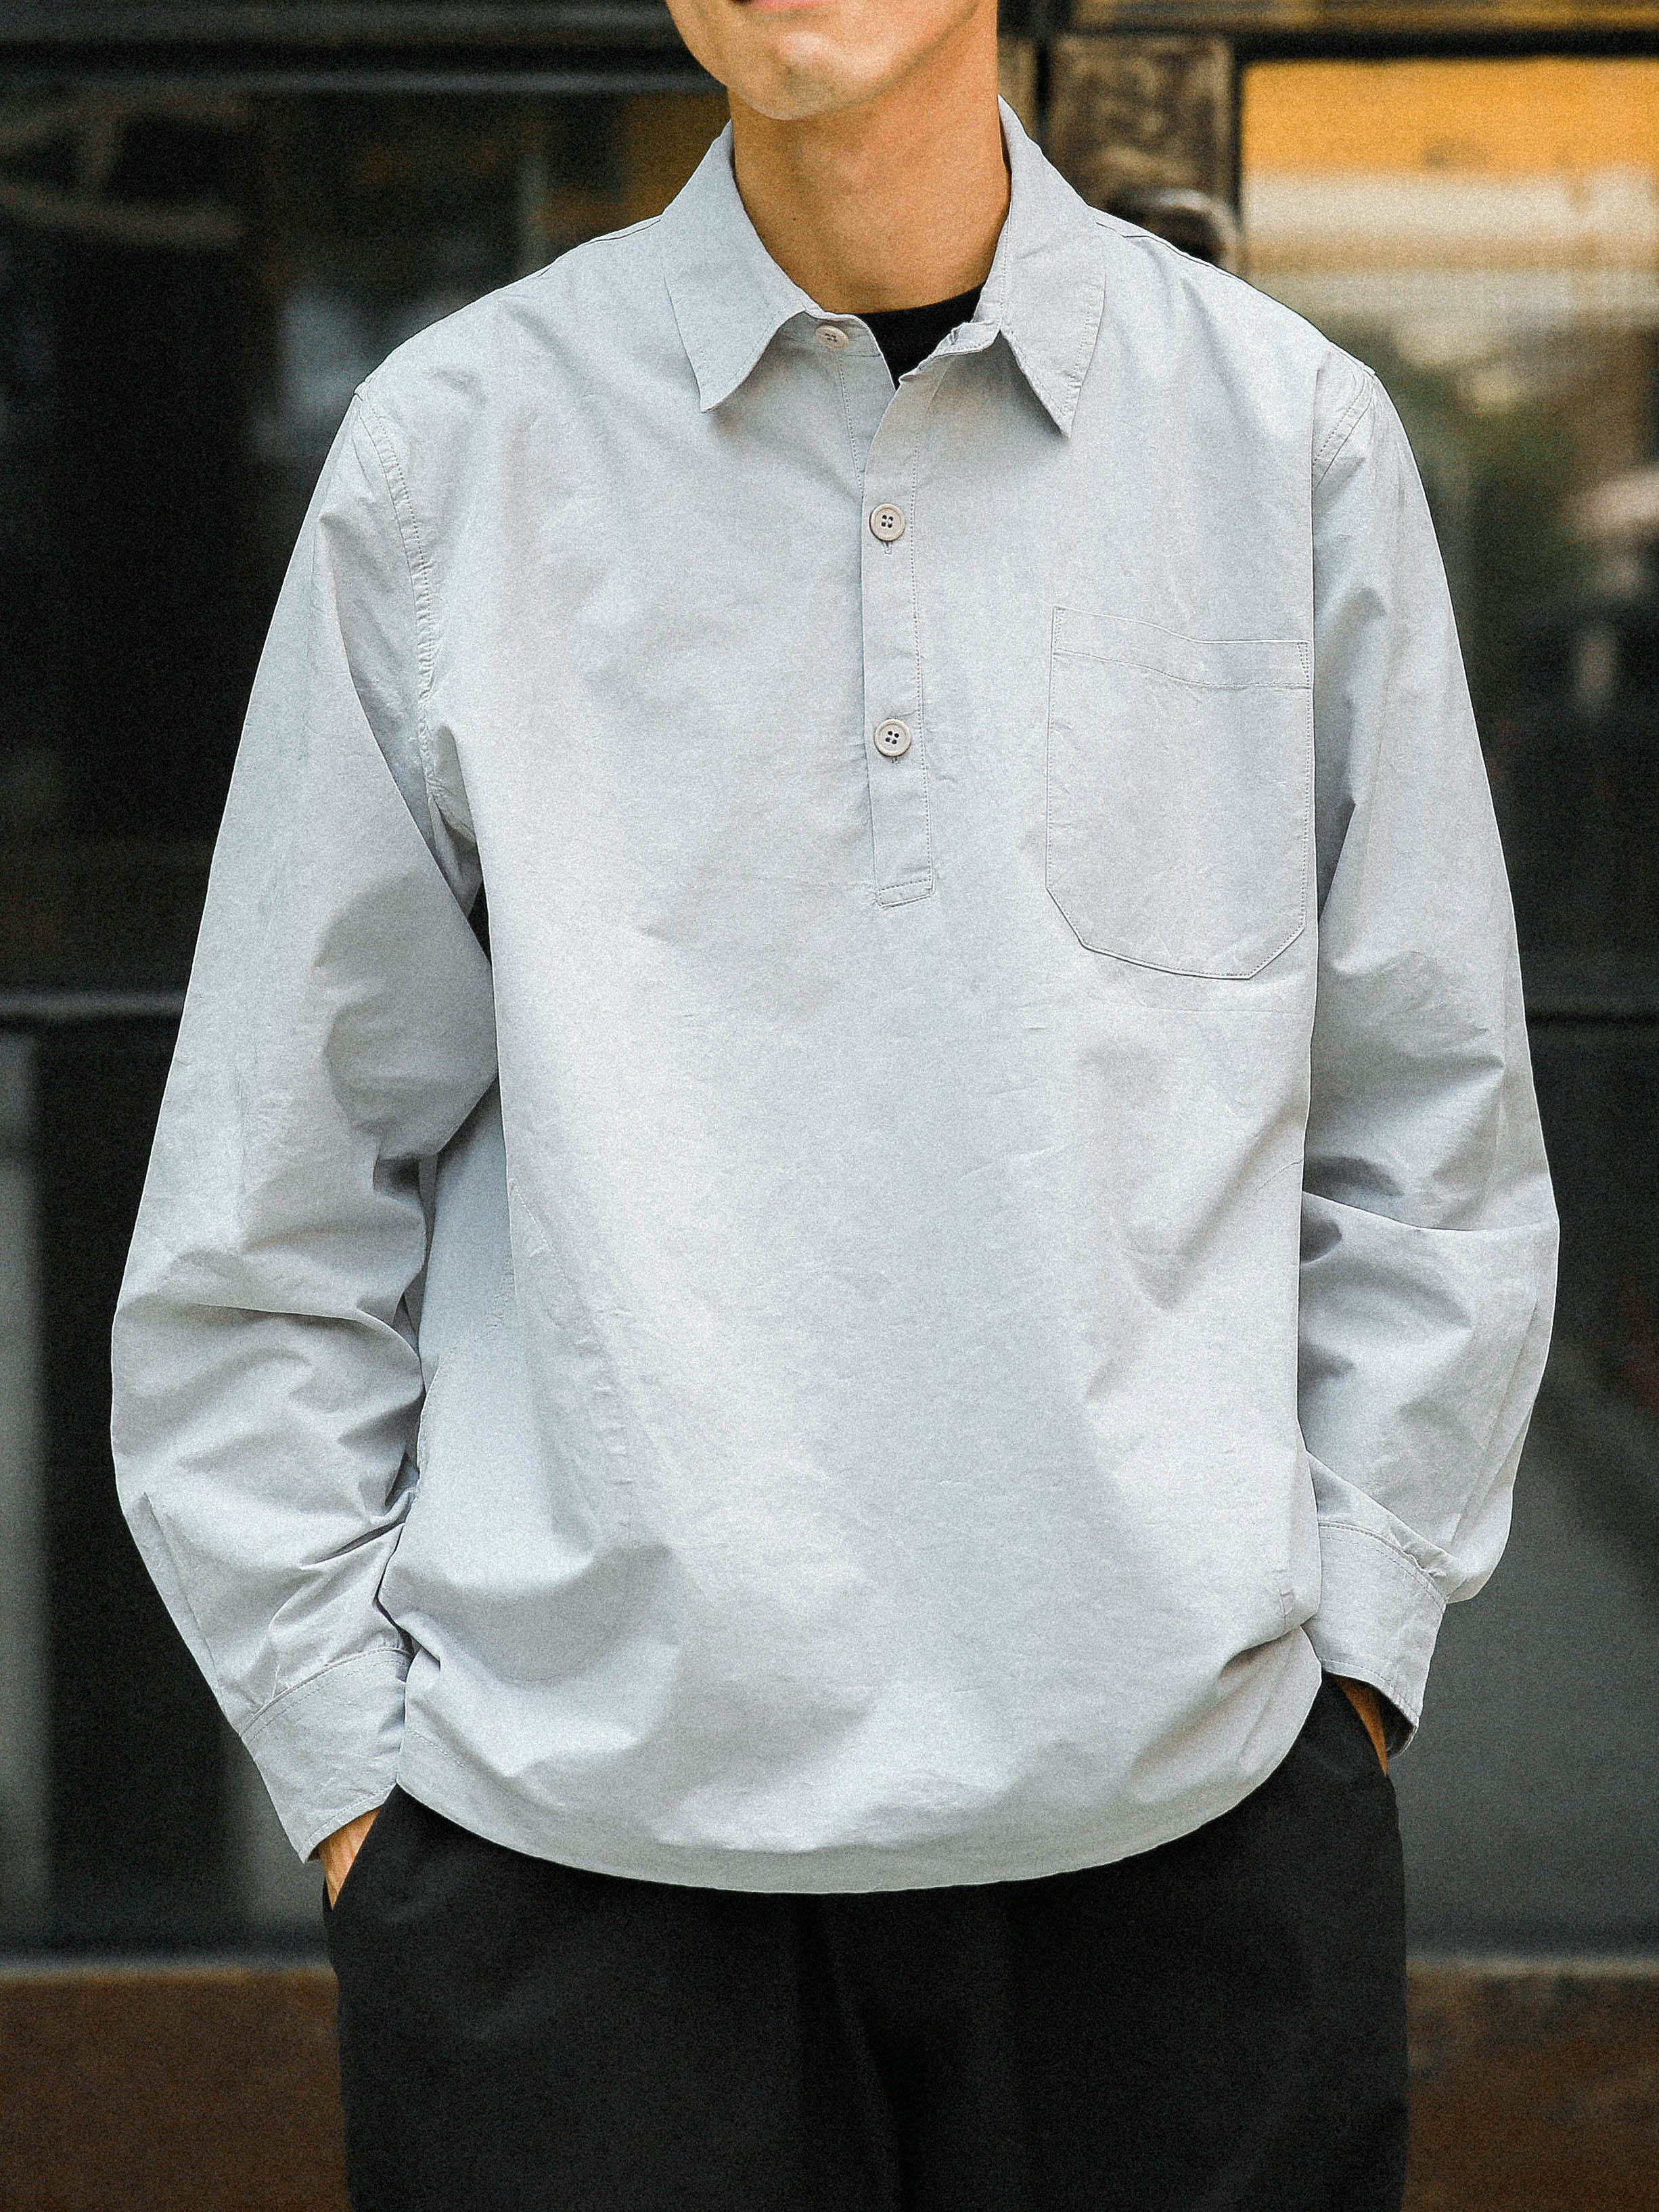 CottonFunctional shirt 抽绳棉质机能风格衬衣衬衫